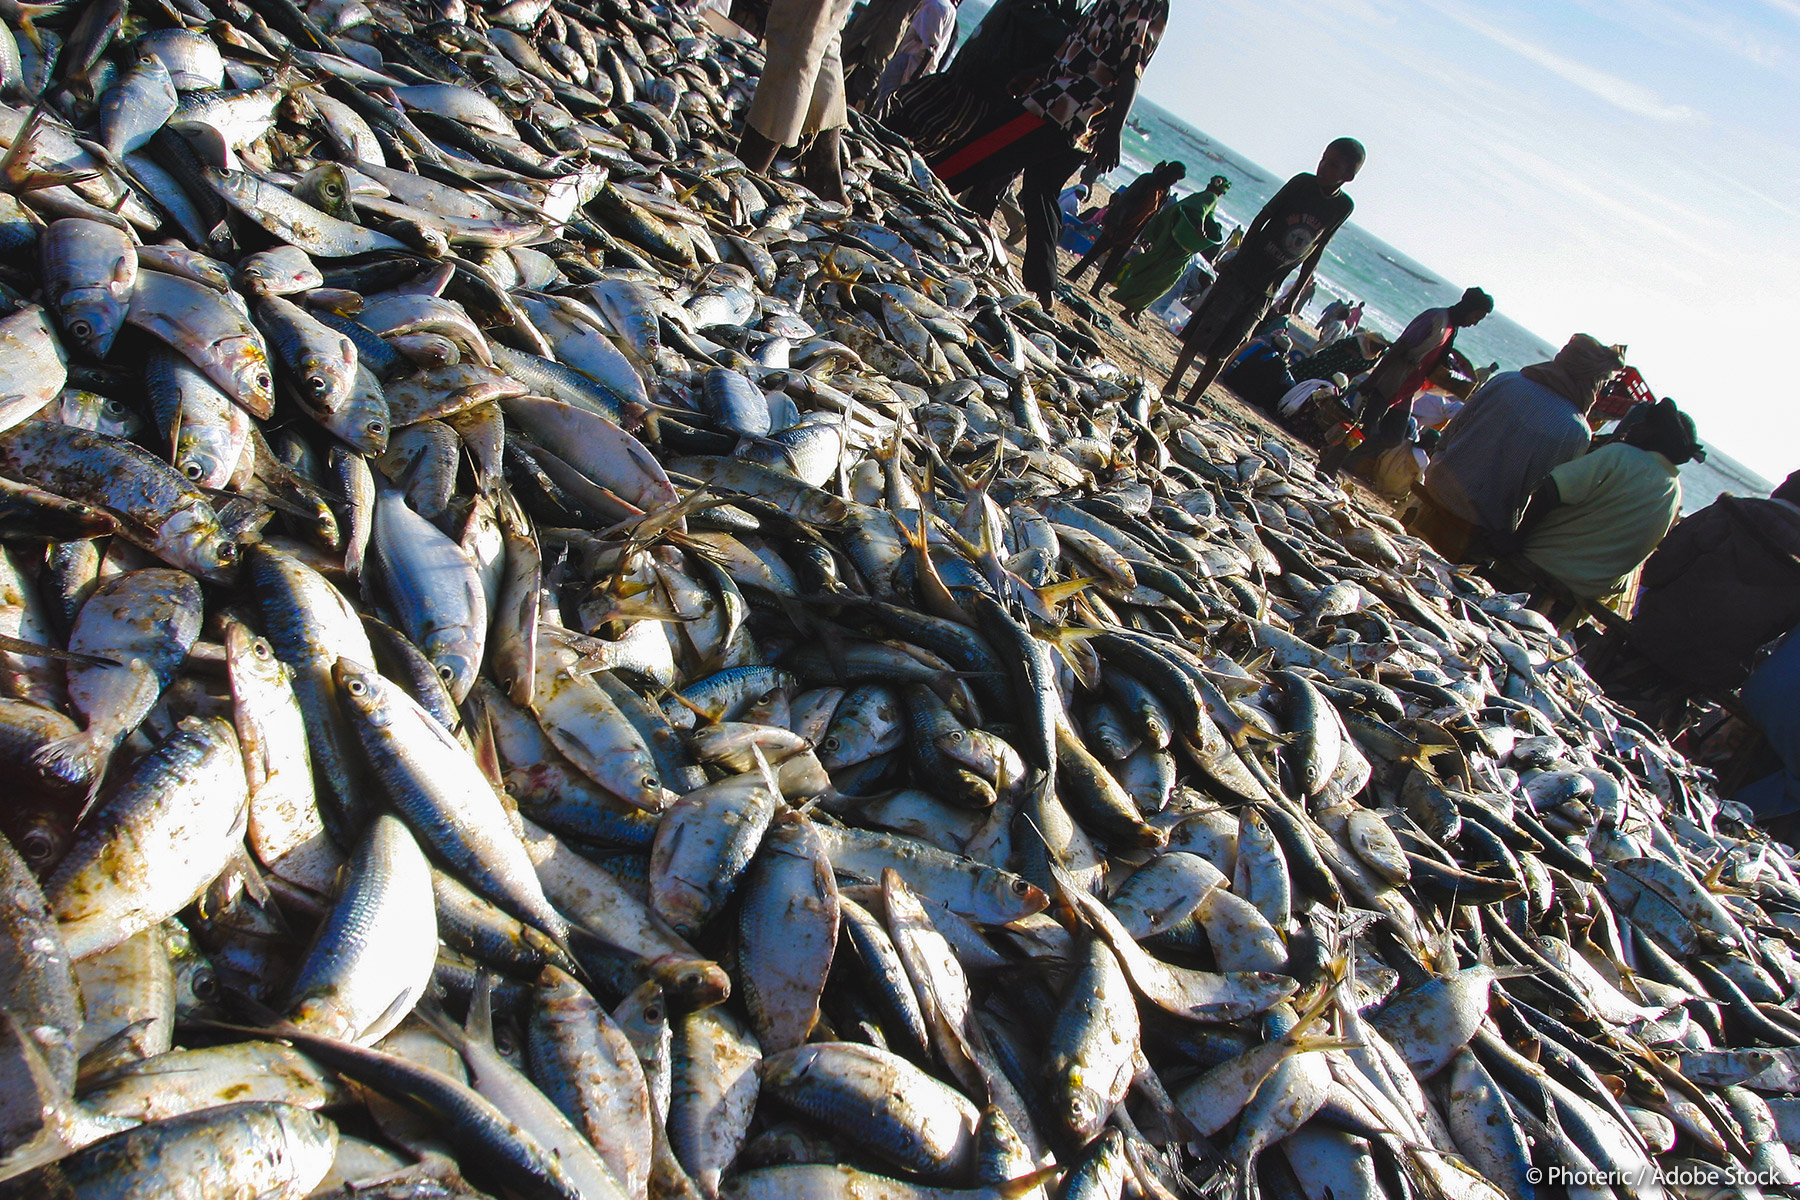 Les députés européens approuvent le plus important accord de pêche de l’UE avec la Mauritanie